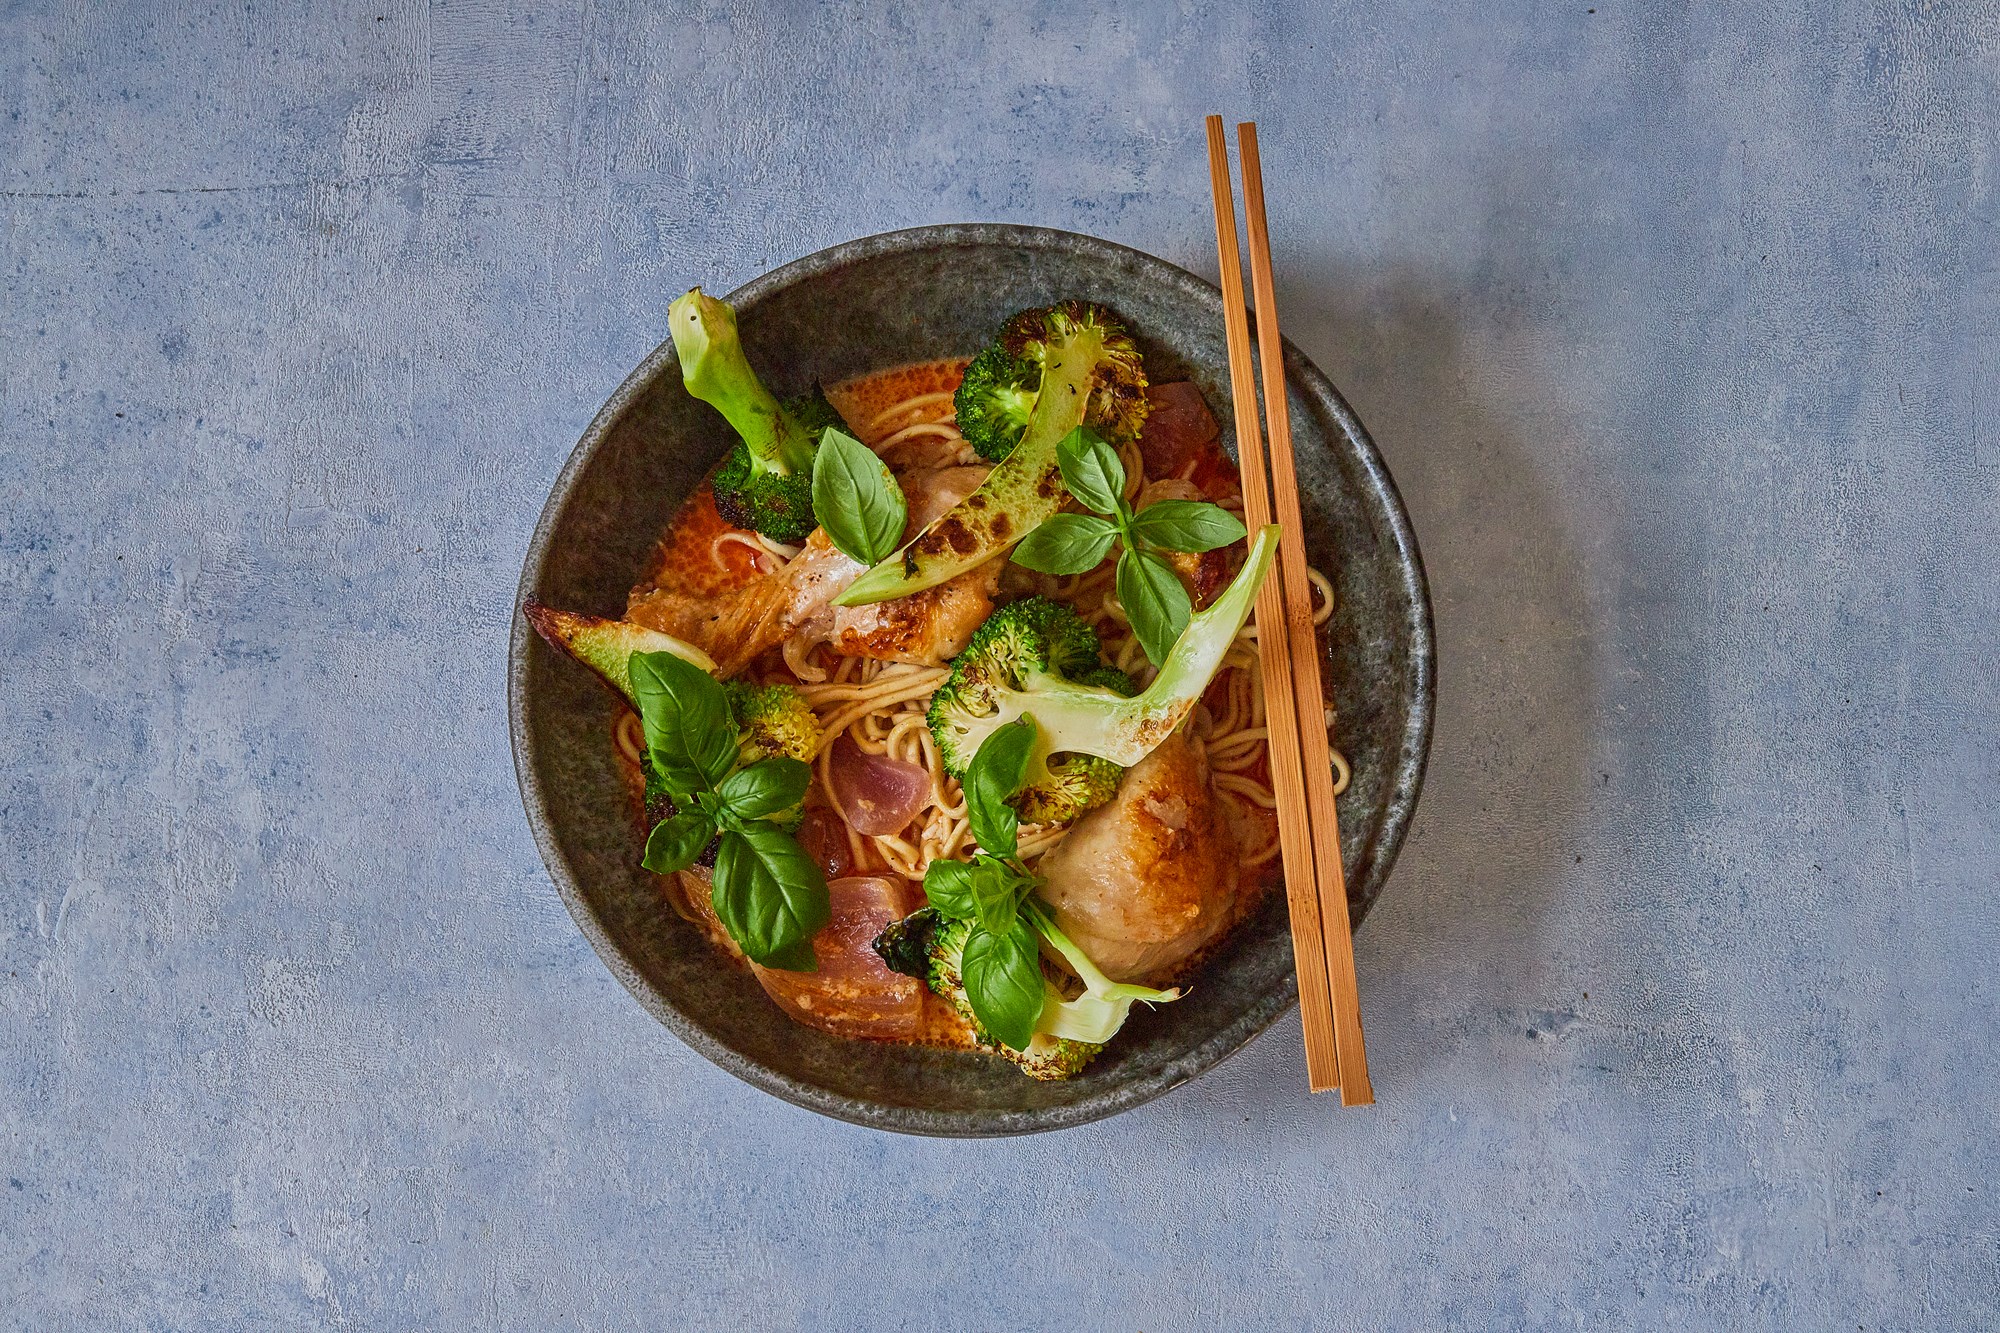 Kyllingelår i rød curry med nudler, broccoli og basilikum